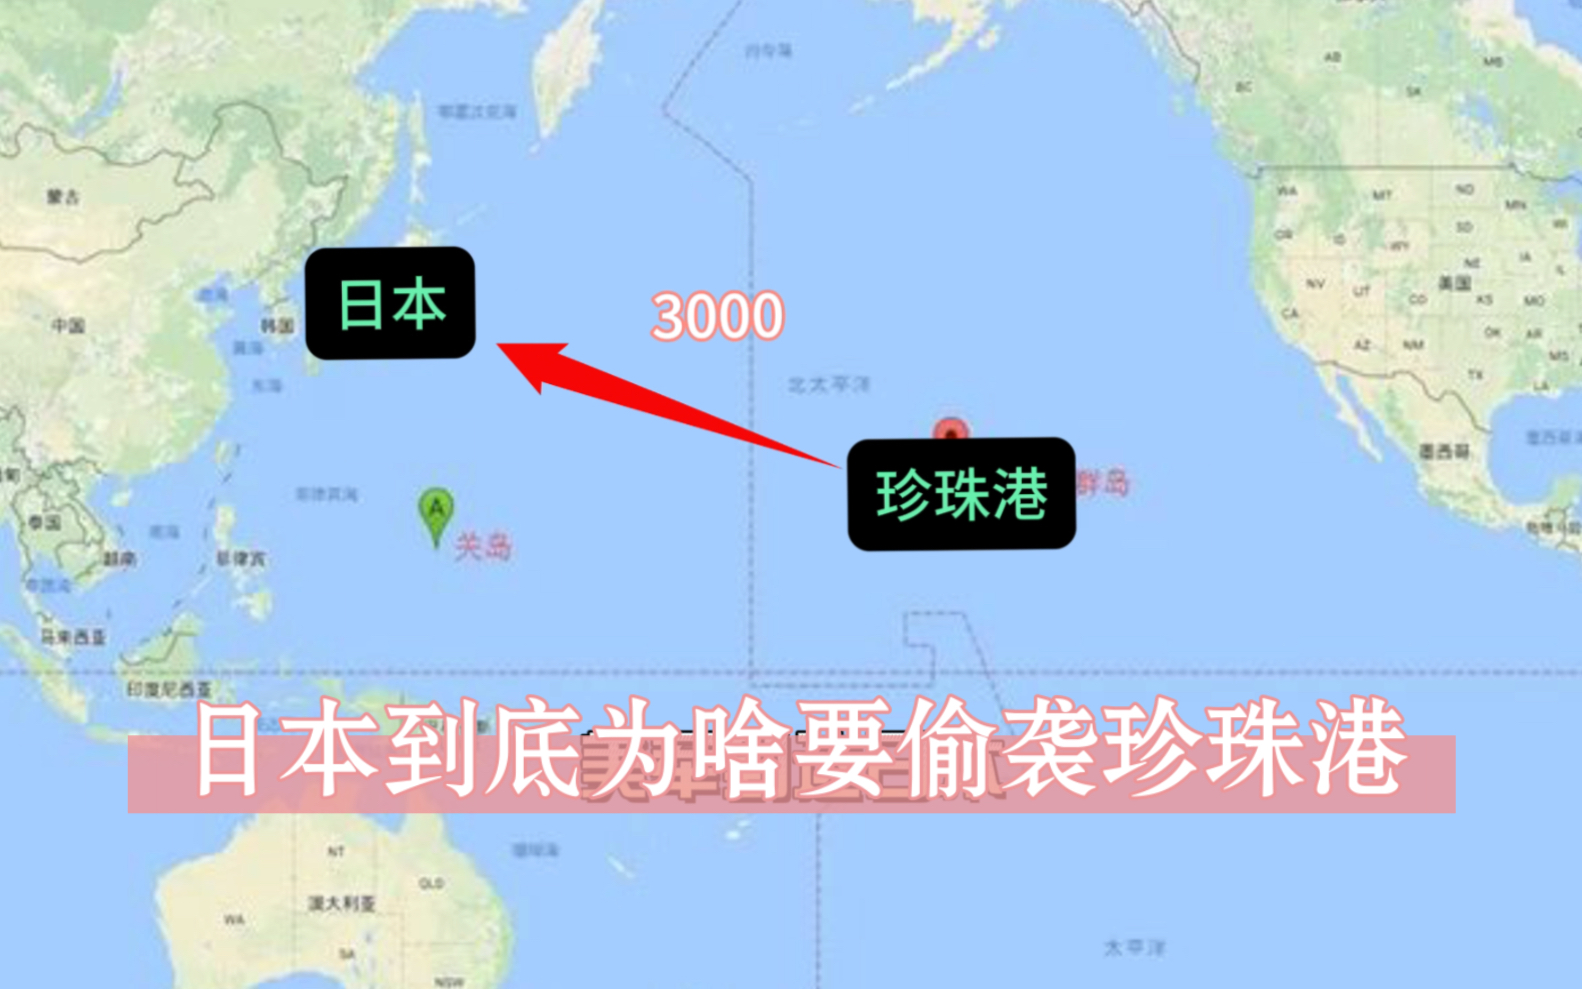 日本到底为啥要偷袭珍珠港